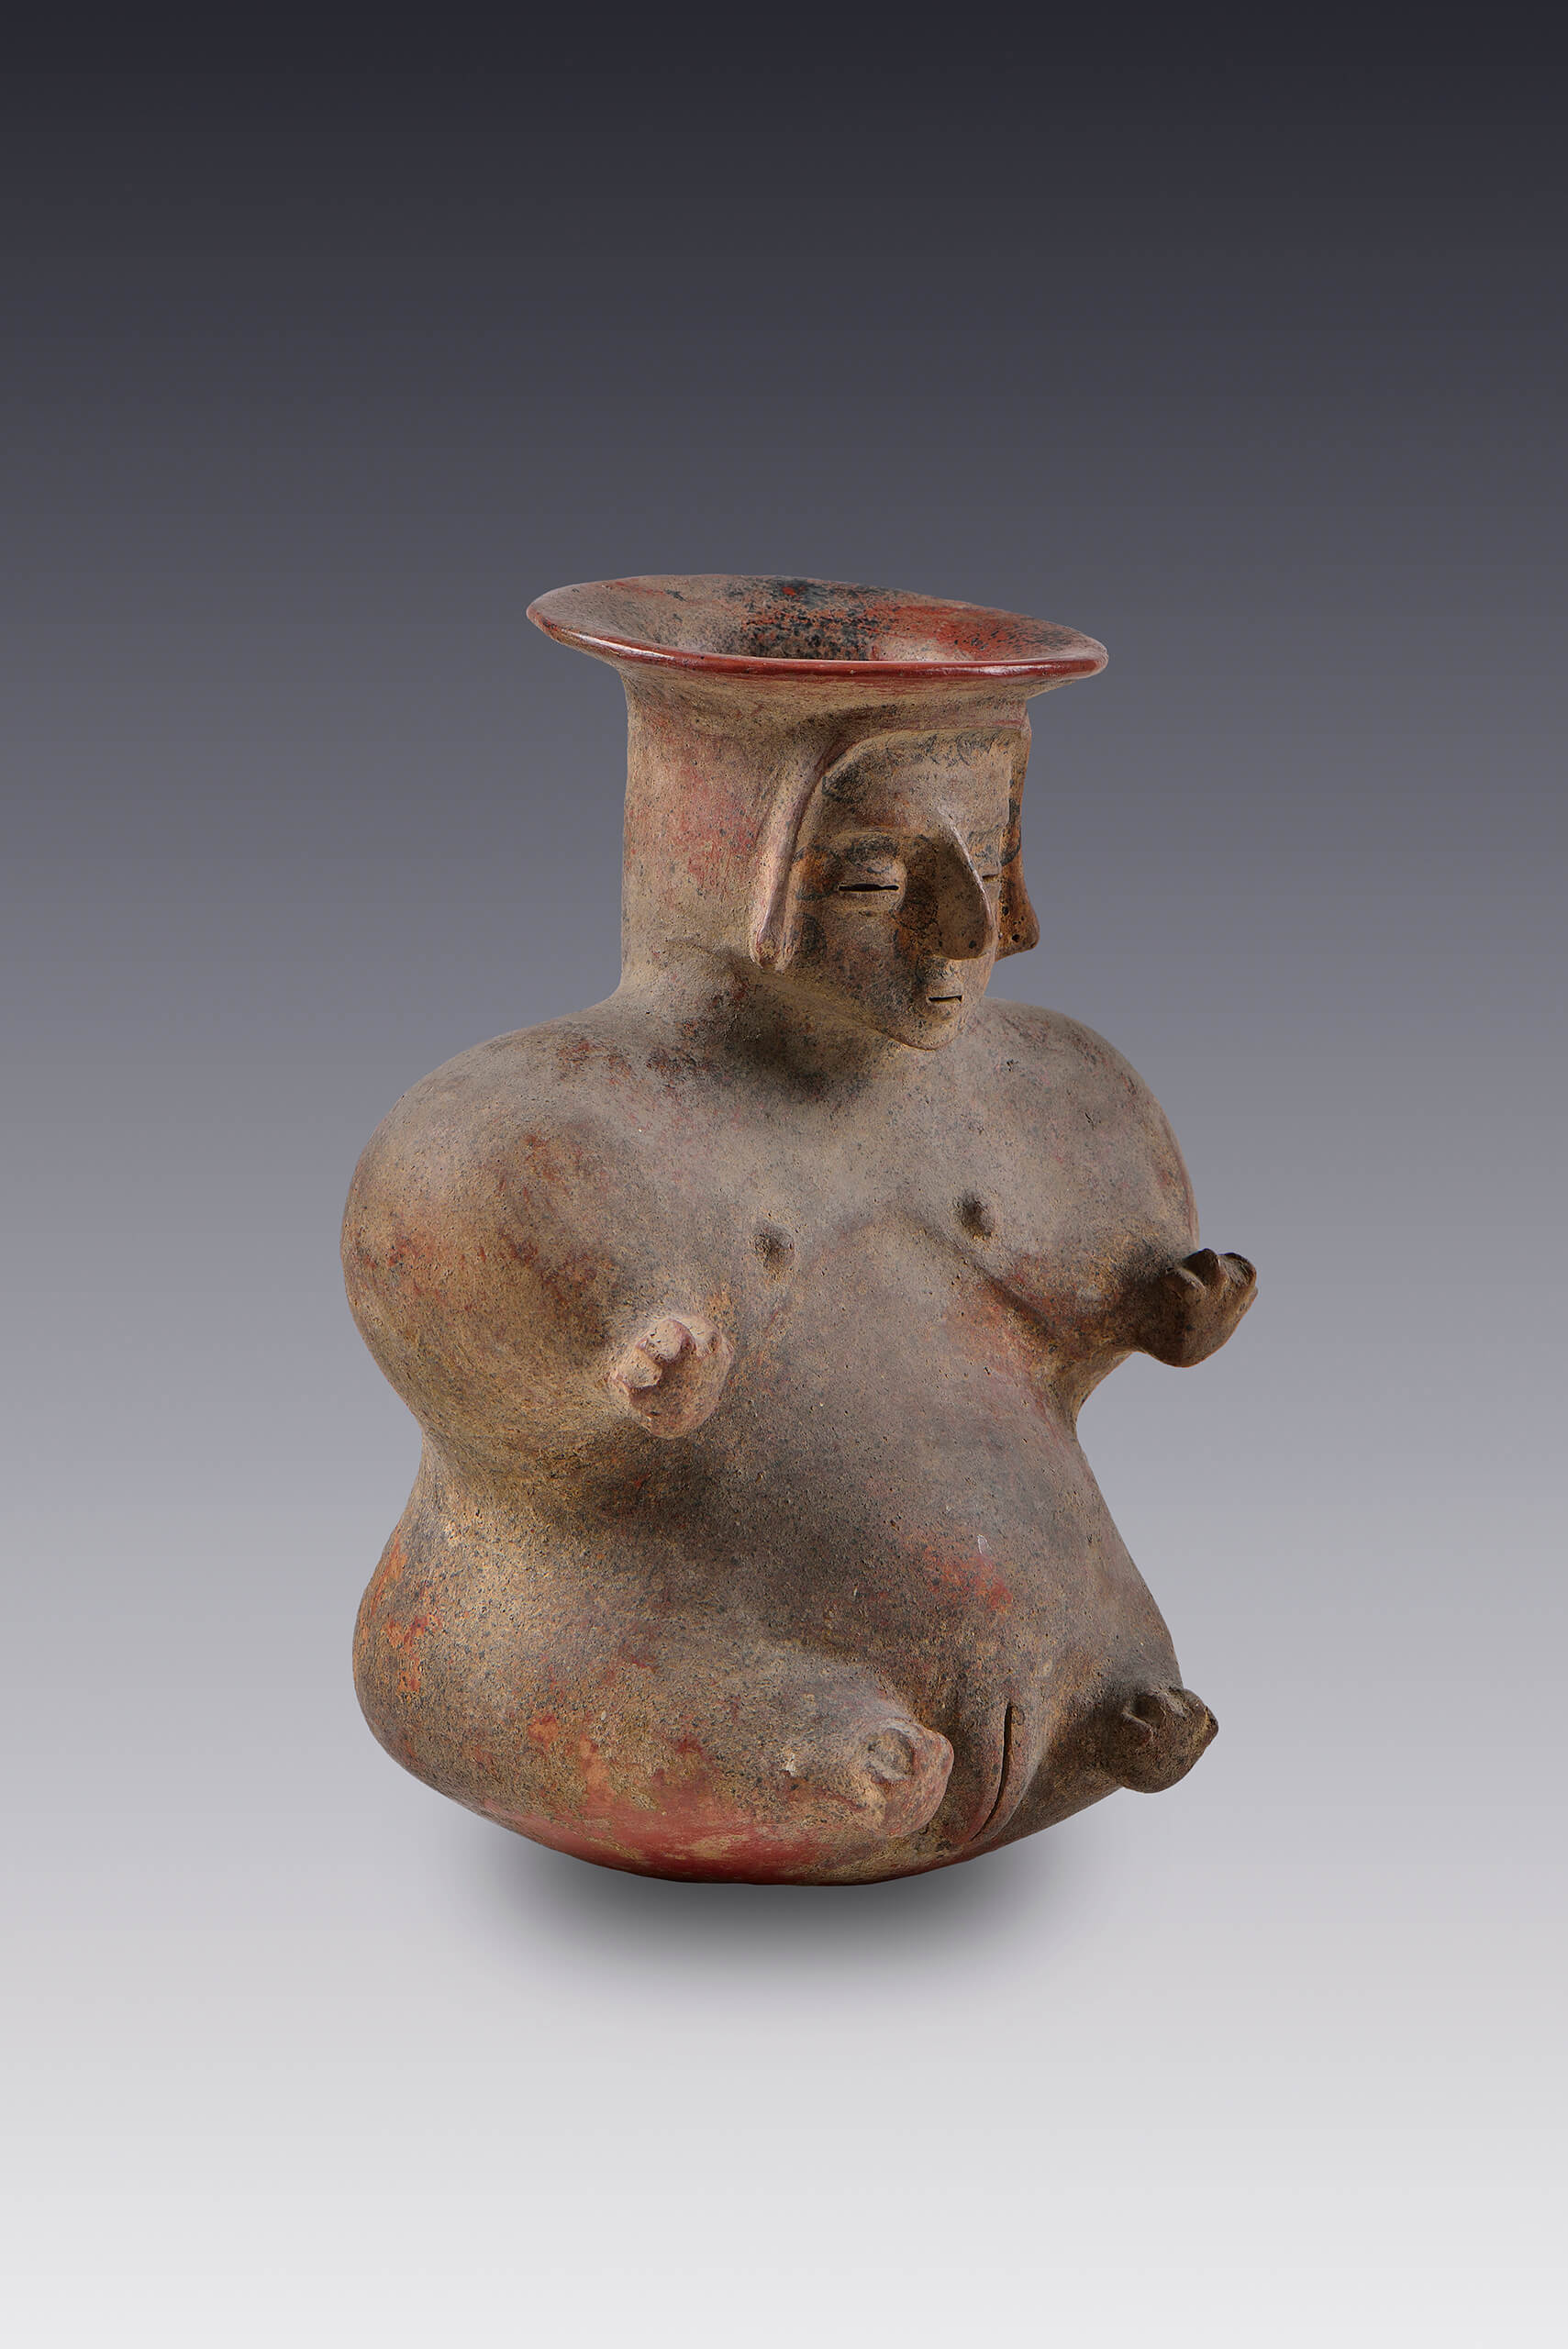 Vasija de mujer con vientre abultado | El México antiguo. Salas de Arte Prehispánico | Museo Amparo, Puebla